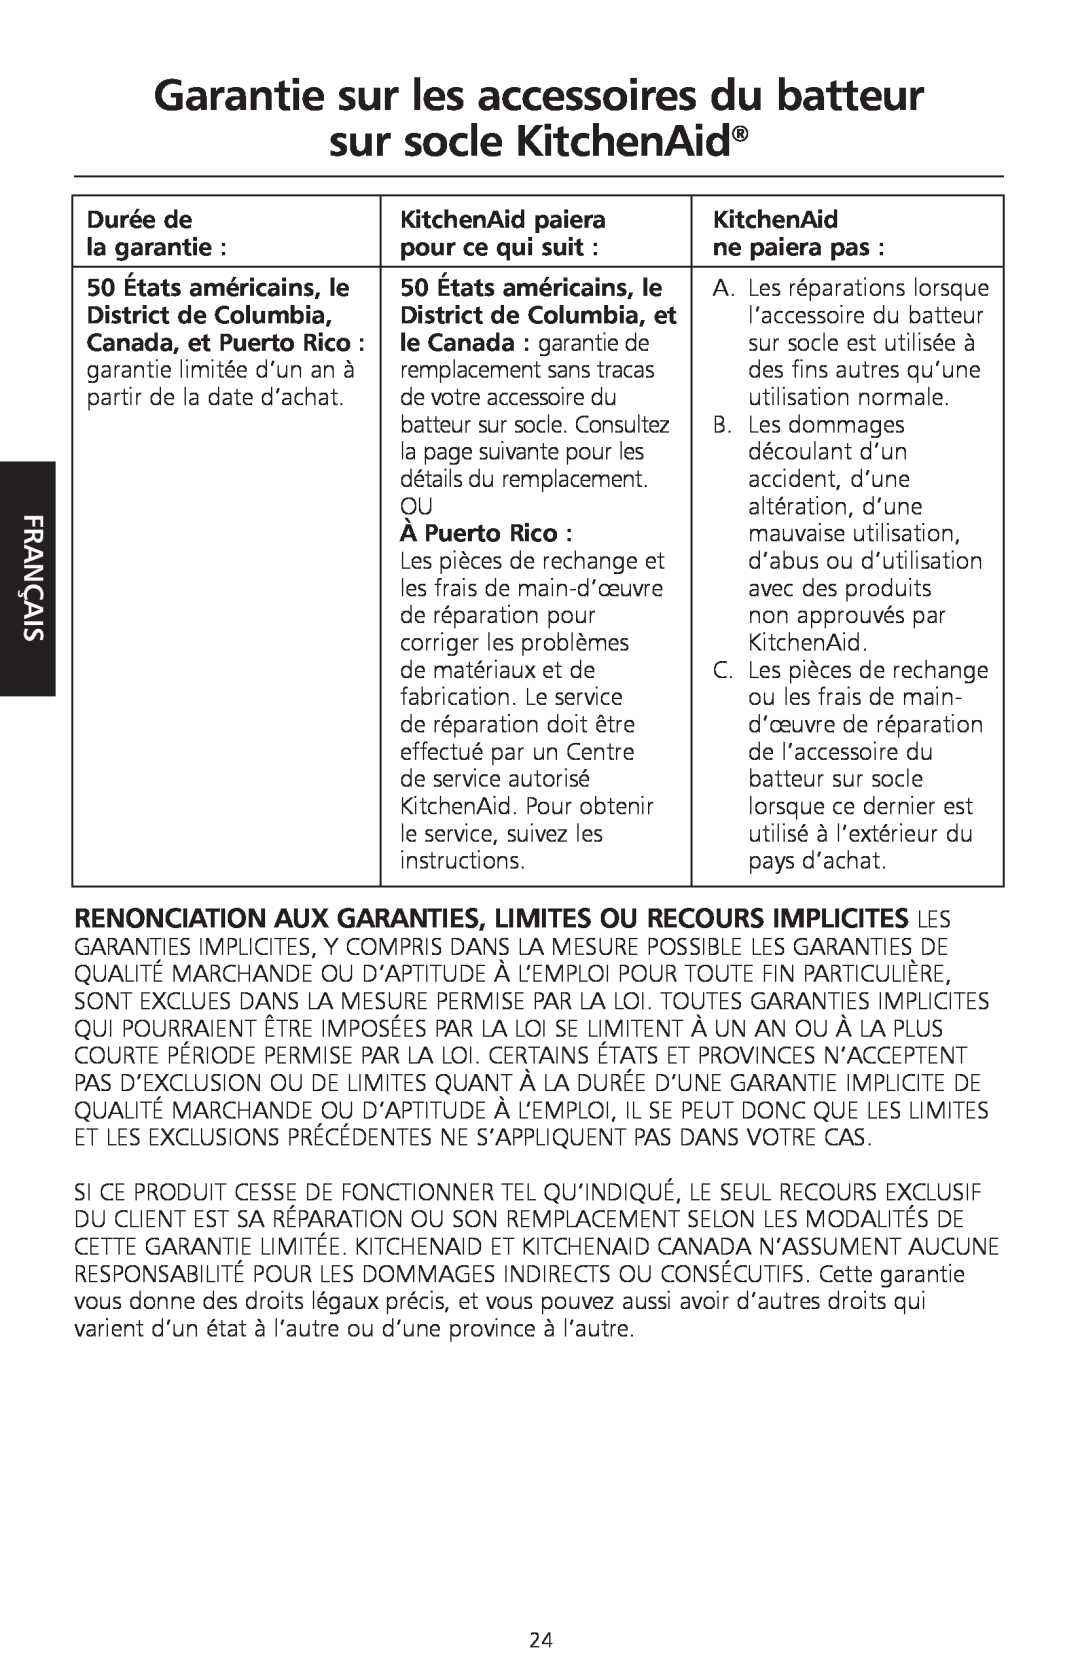 KitchenAid KPEX manual Garantie sur les accessoires du batteur sur socle KitchenAid 